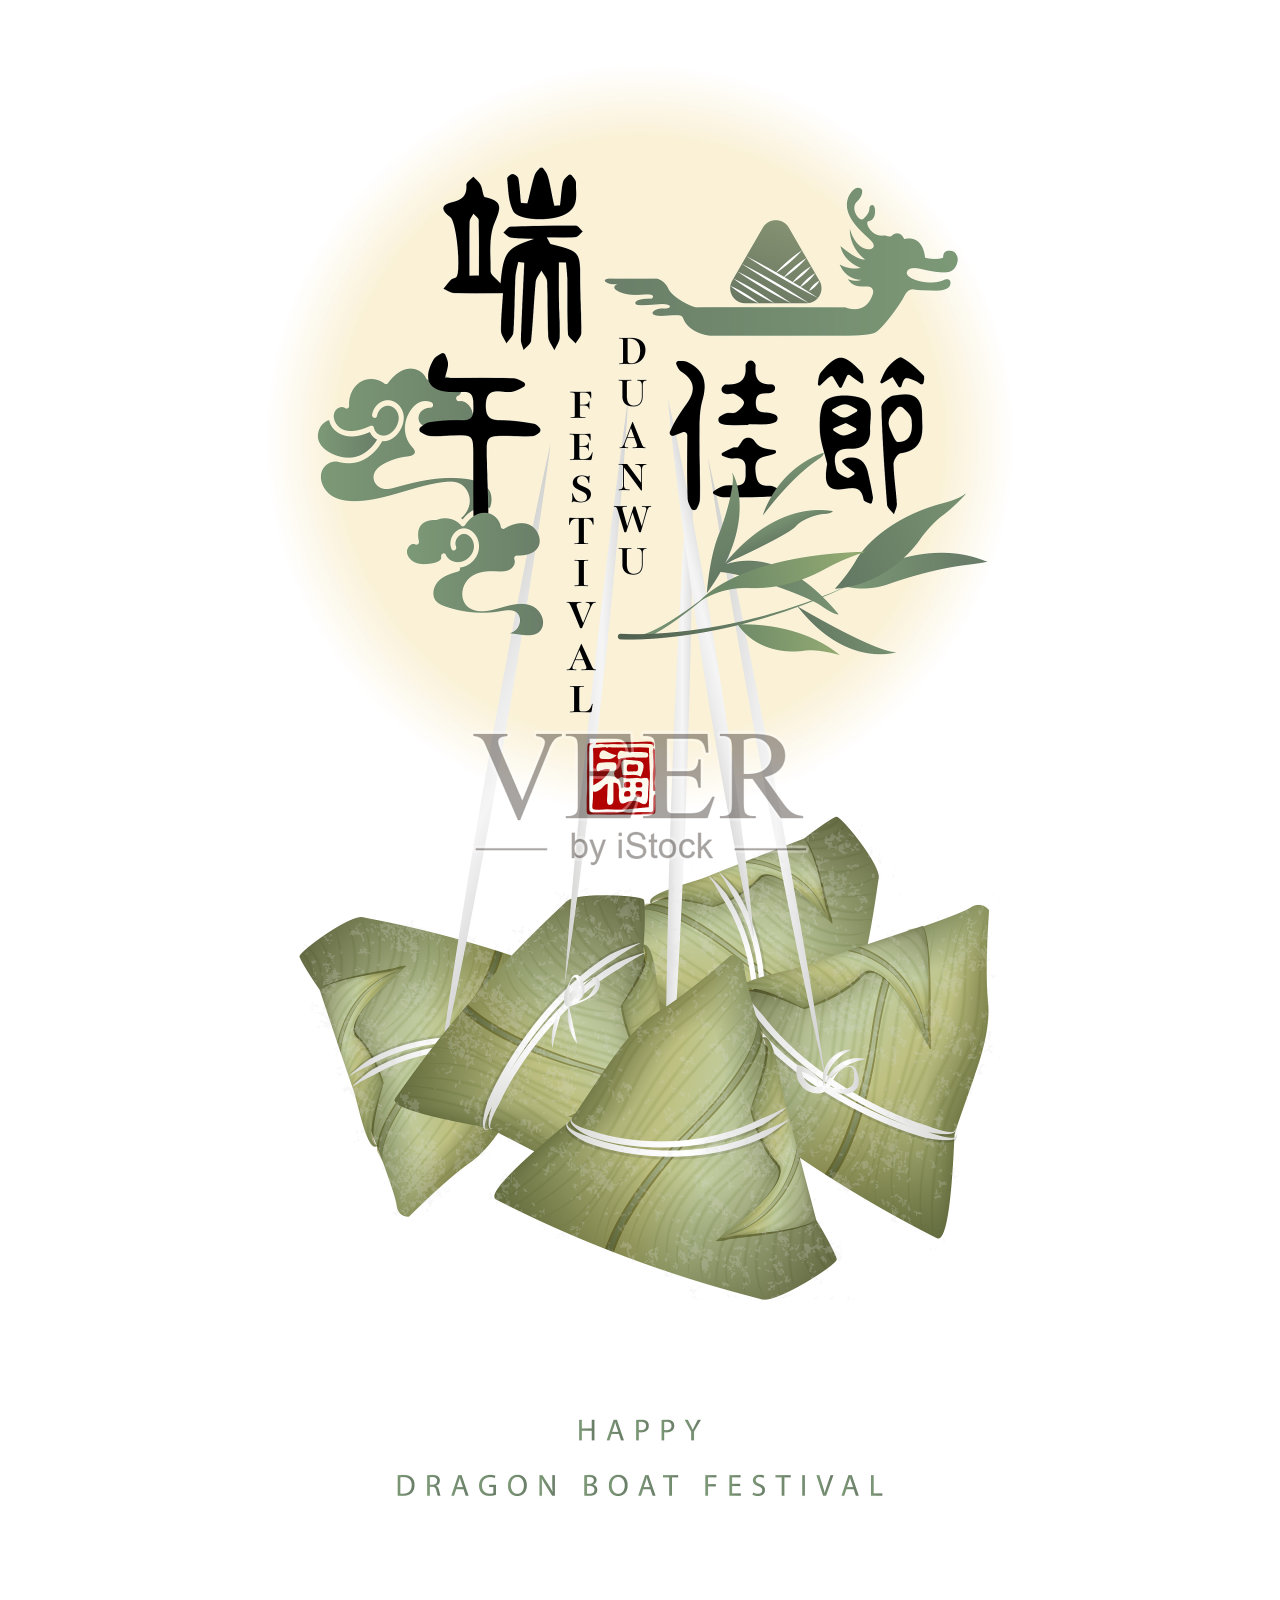 端午节传统食物粽子和竹叶螺旋云快乐。中文翻译:端午节和祝福。设计模板素材